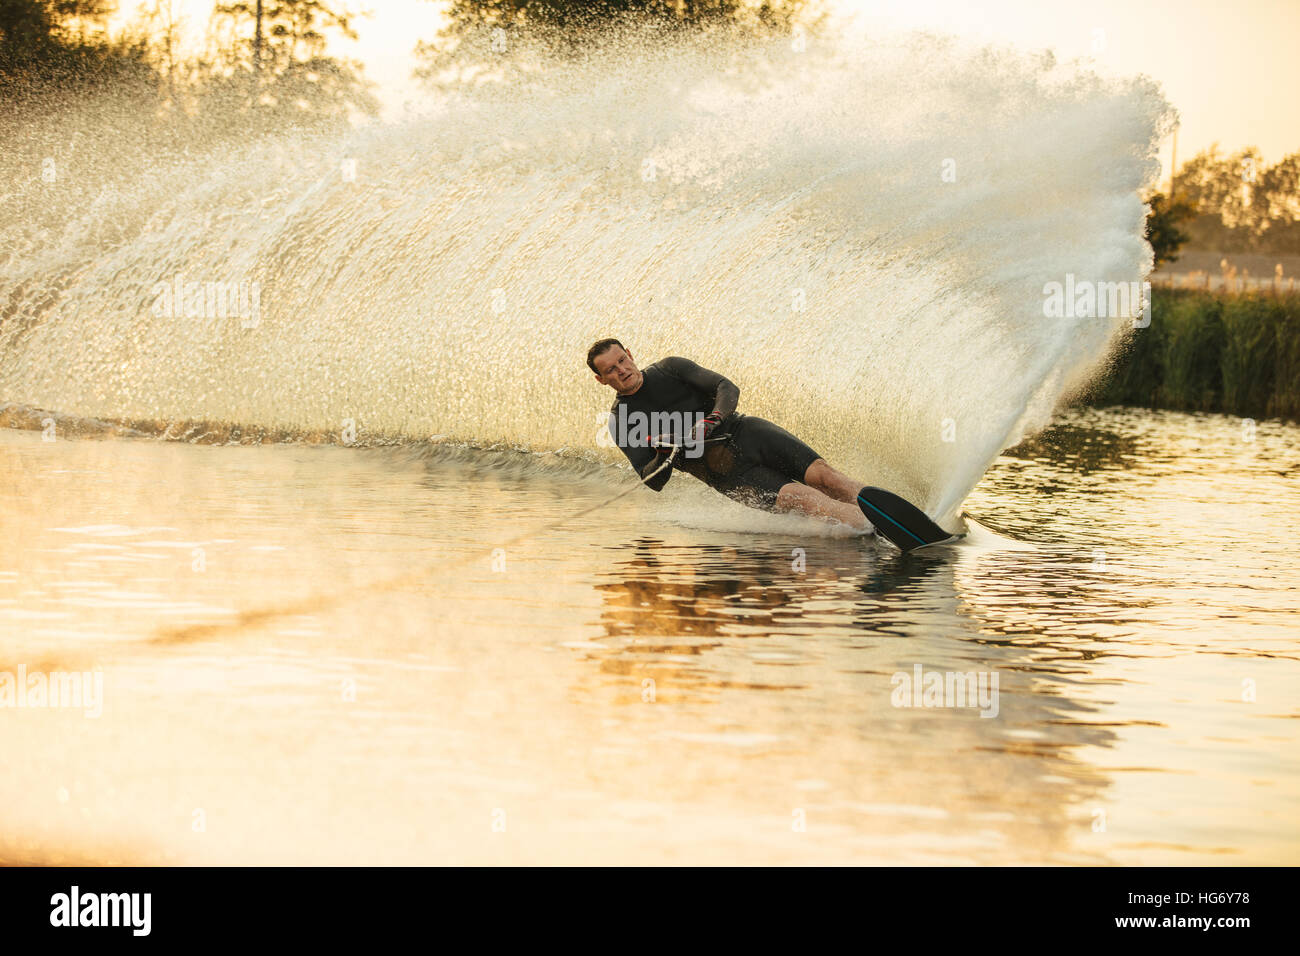 Mann Wakeboarden an einem See mit Spritzer Wasser. Wakeboarder Surfen über den See Angeberei ist Fertigkeit. Stockfoto